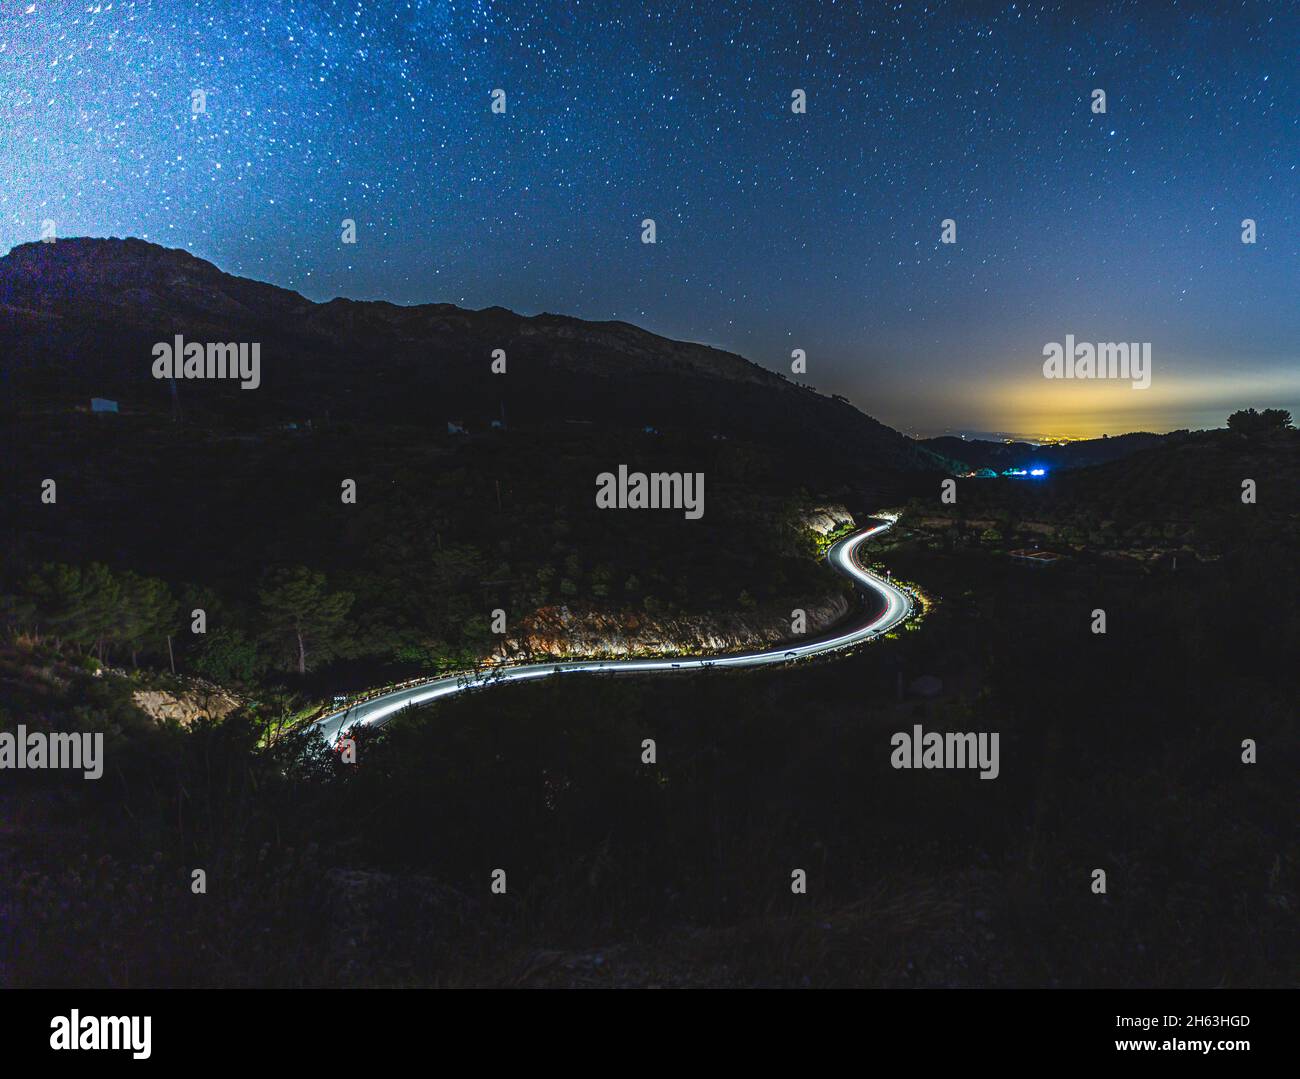 Leichte Spur von Autos auf einer kurvenreichen Straße mit den Sternen oben (milkey way) in andalusien, spanien (hdr) Stockfoto